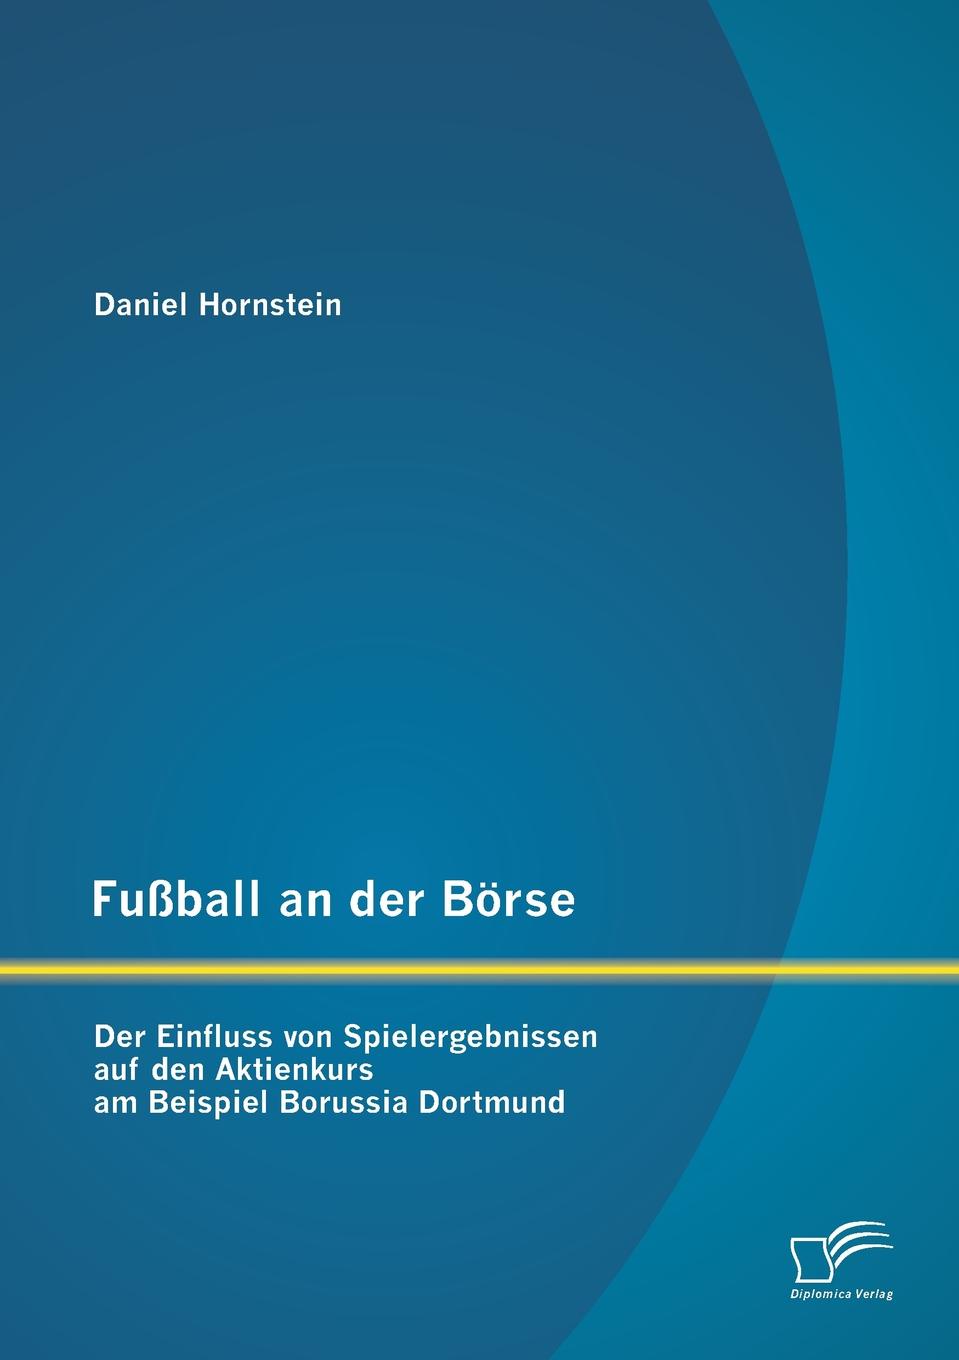 фото Fussball an der Borse. Der Einfluss von Spielergebnissen auf den Aktienkurs am Beispiel Borussia Dortmund